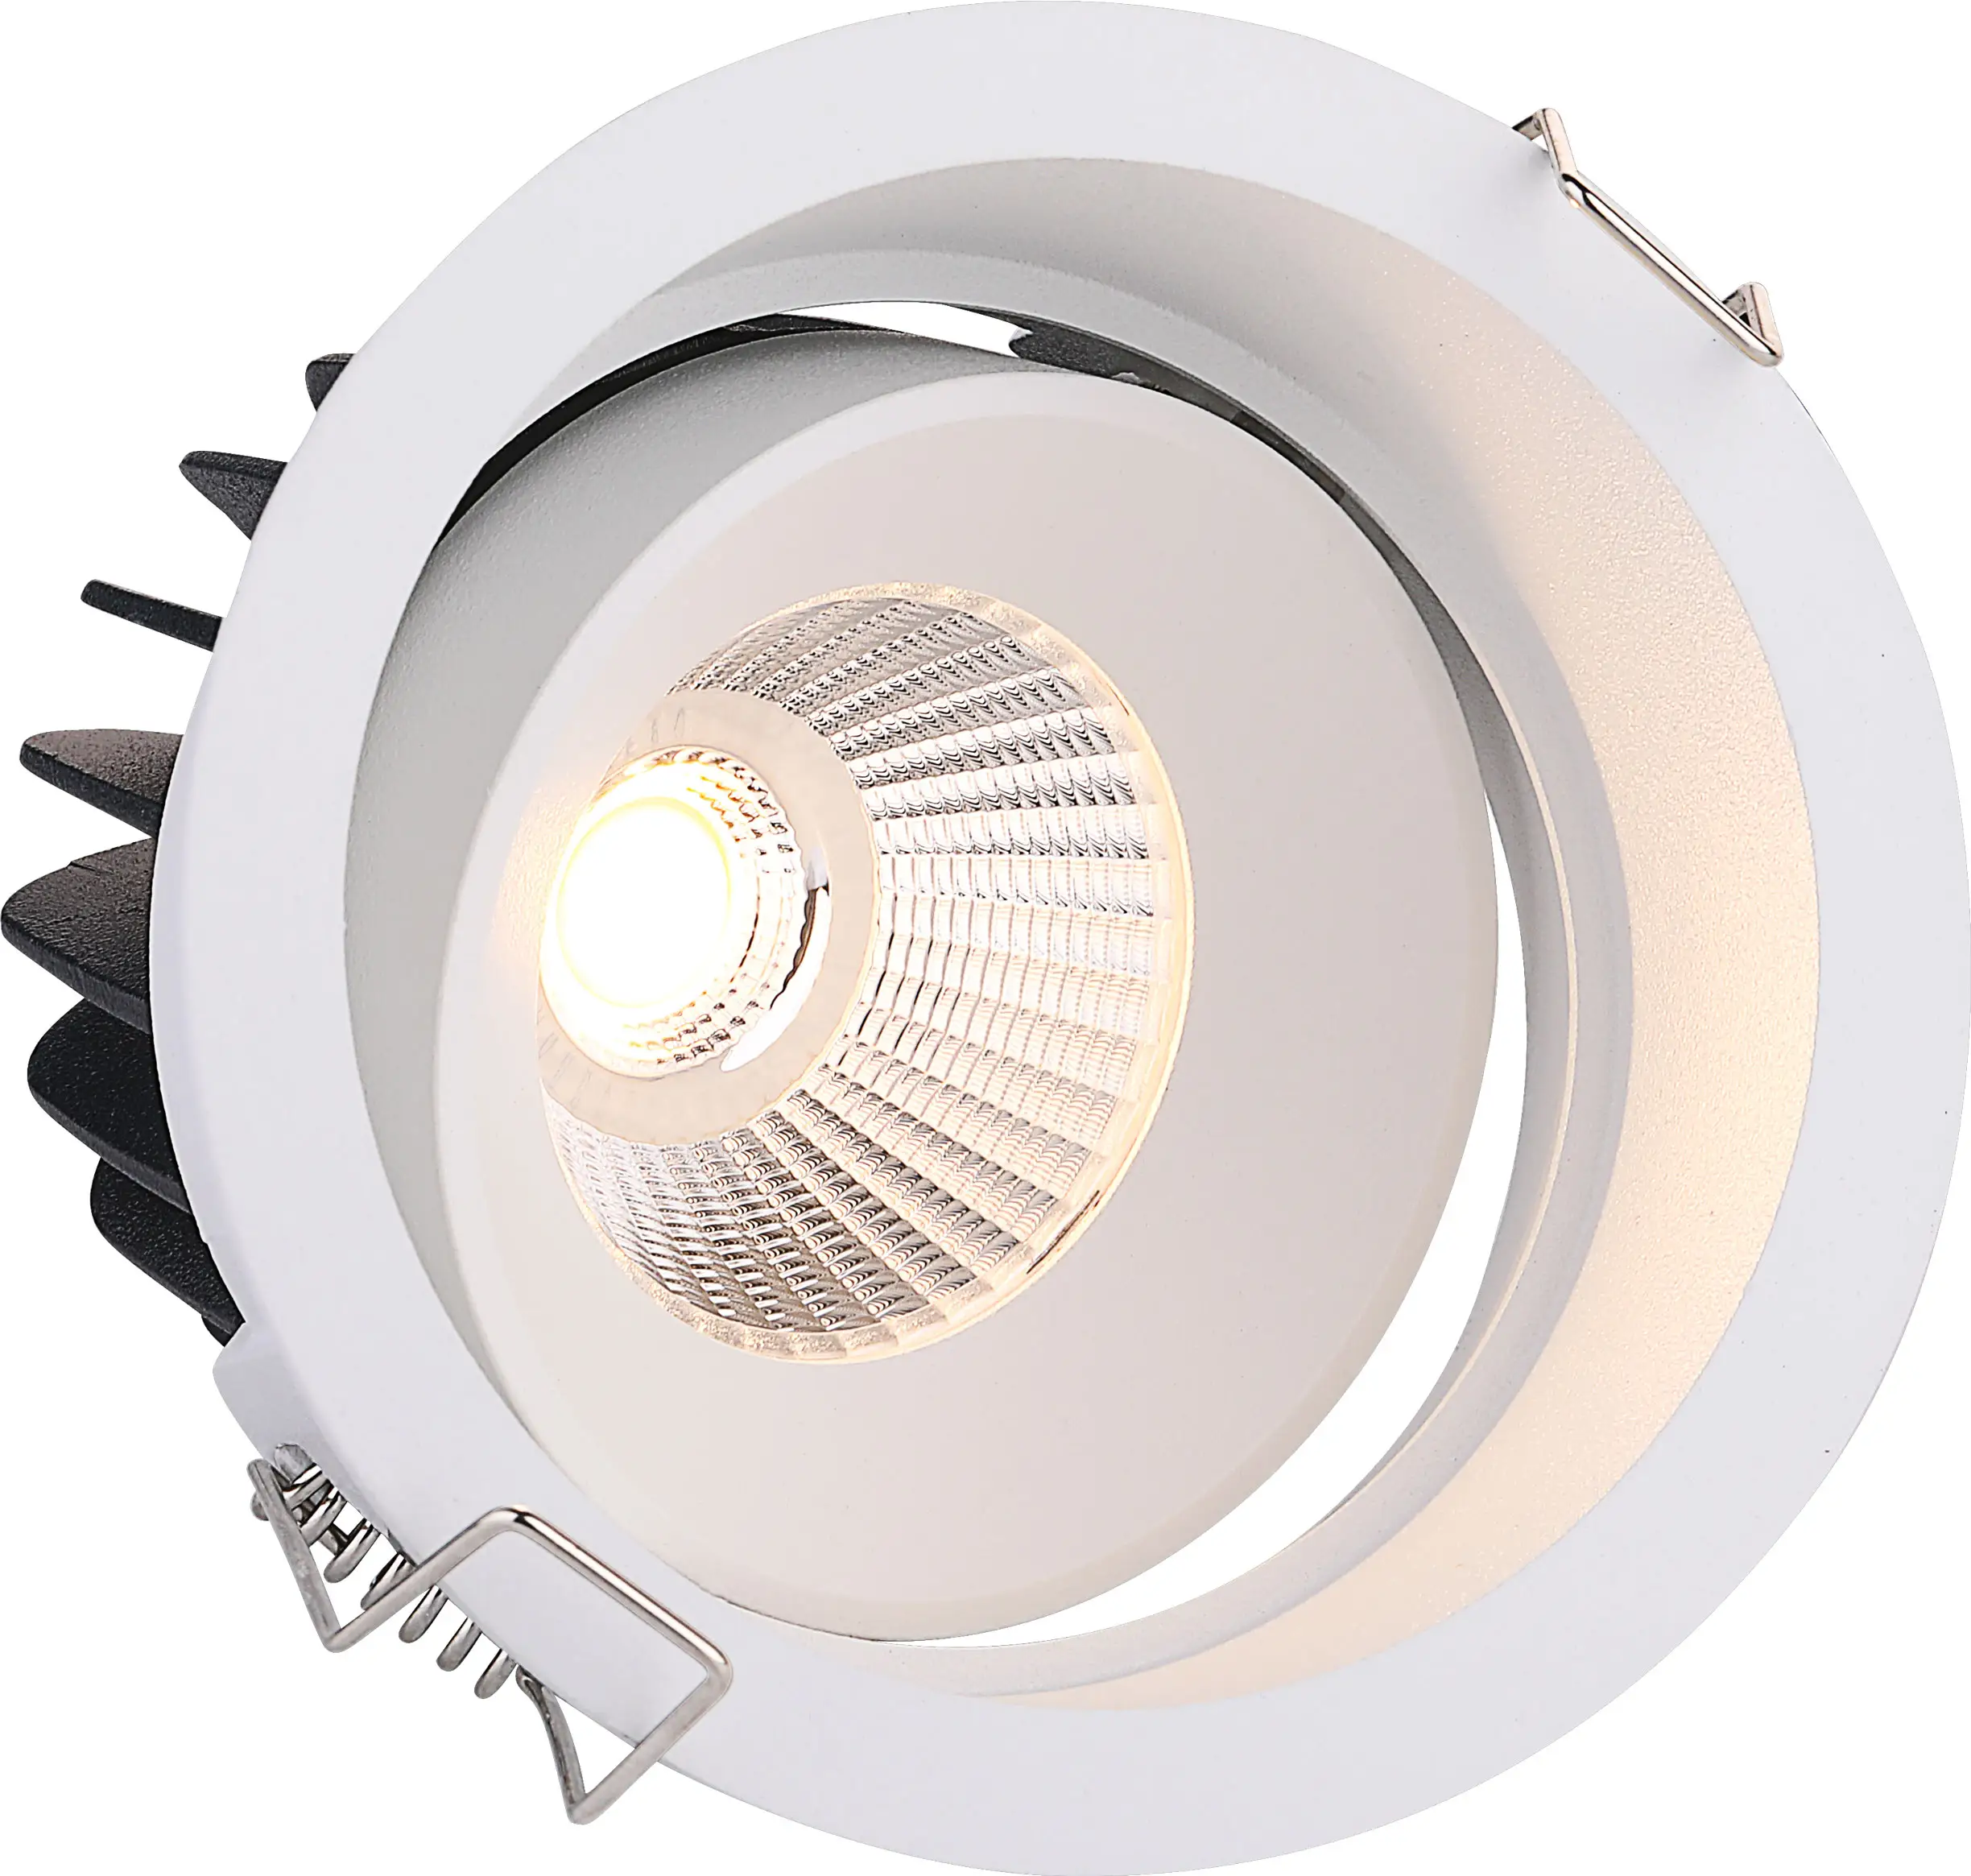 Lampu sorot led downlight dengan harga populer lampu sorot led cob dapat disesuaikan lampu sorot bawah led dengan harga terbaik